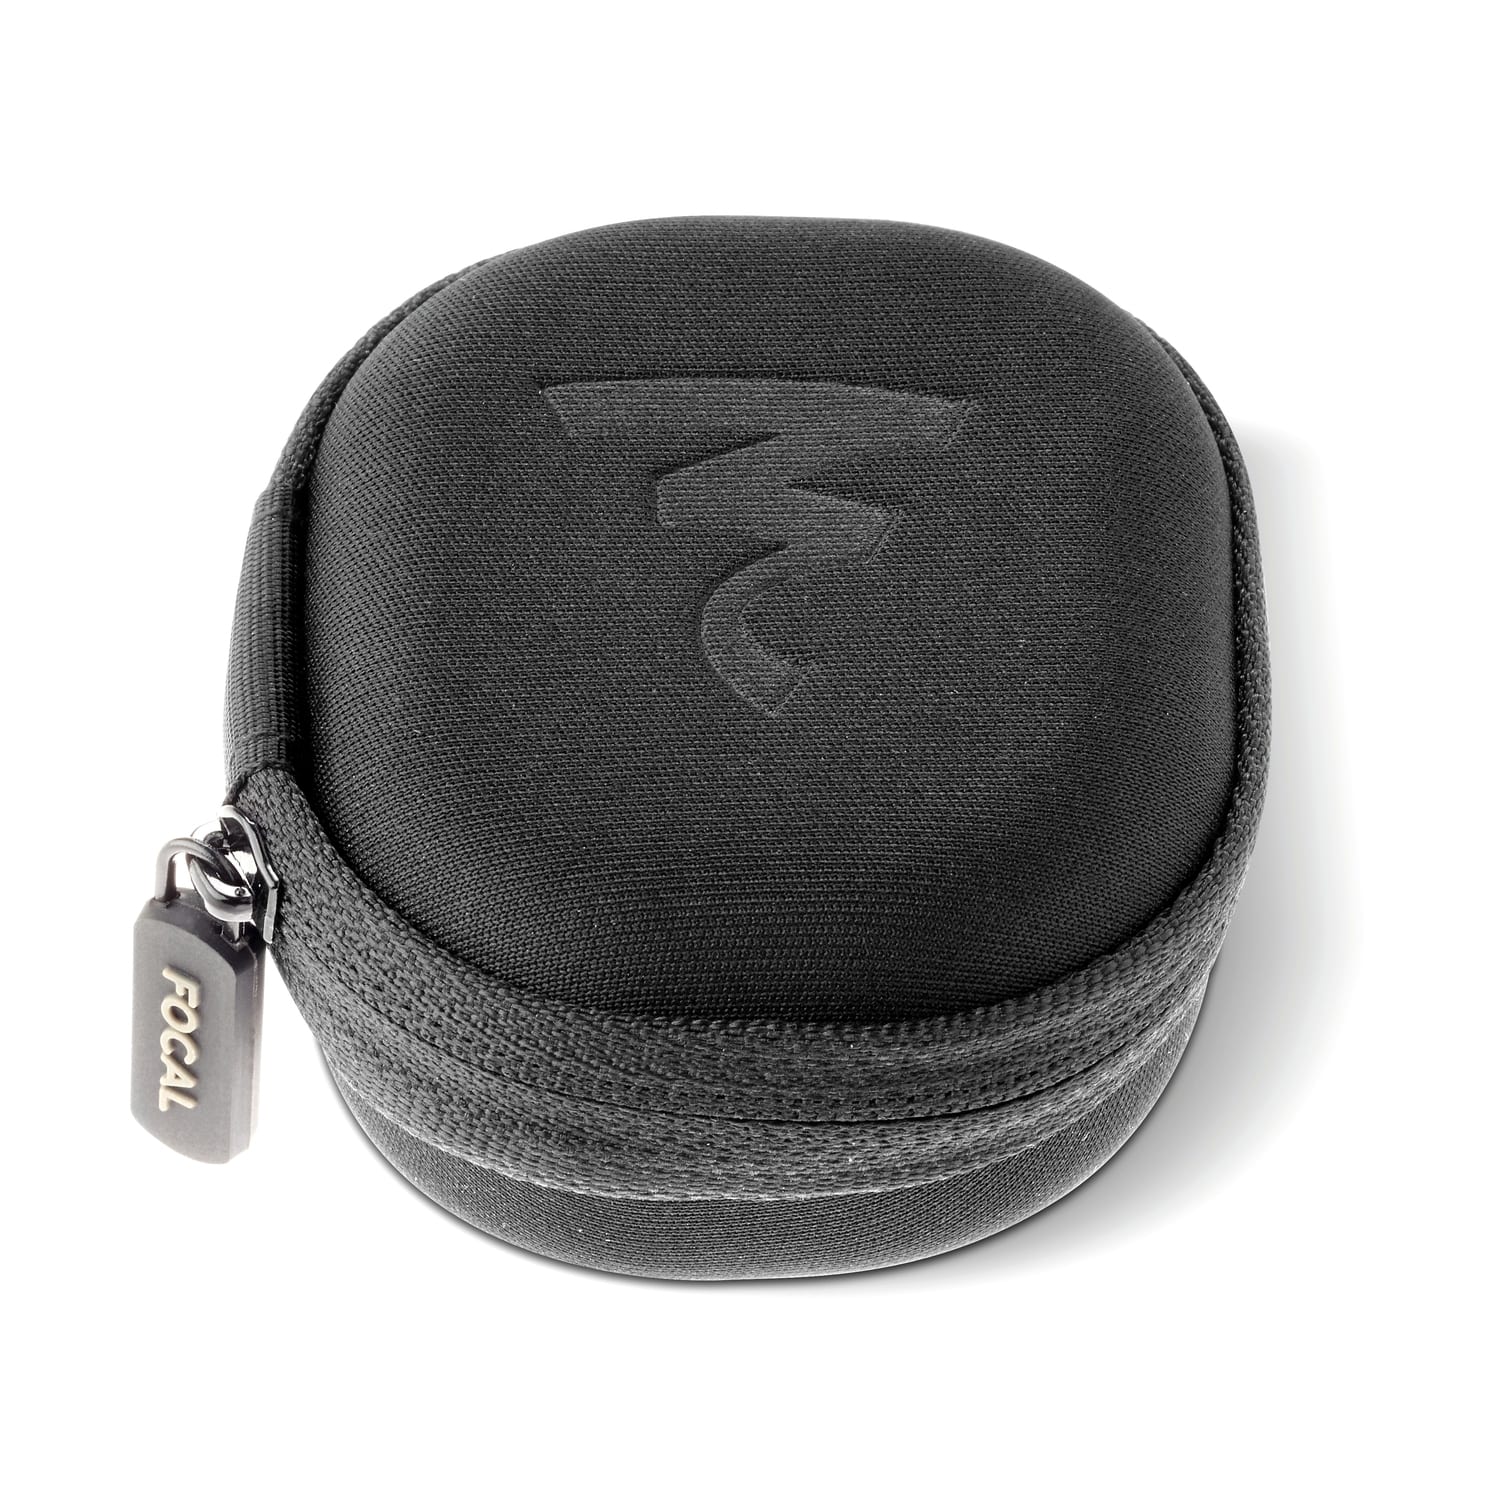 Focal Sphear Wireless zwart - In ear oordopjes